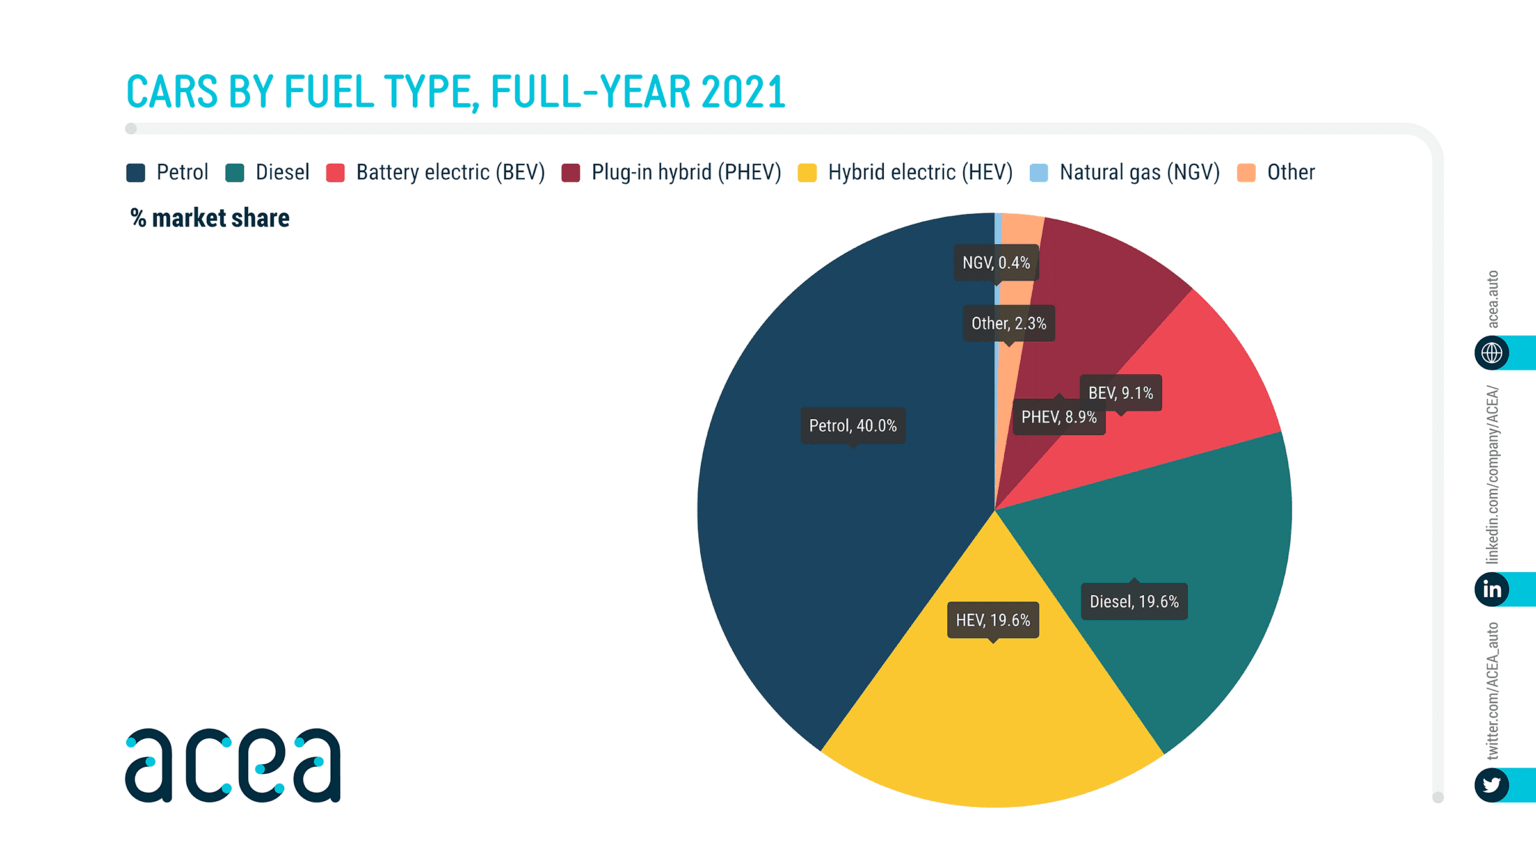 Acea infográfico sobre market share de carros por tipo de combustível em 2021